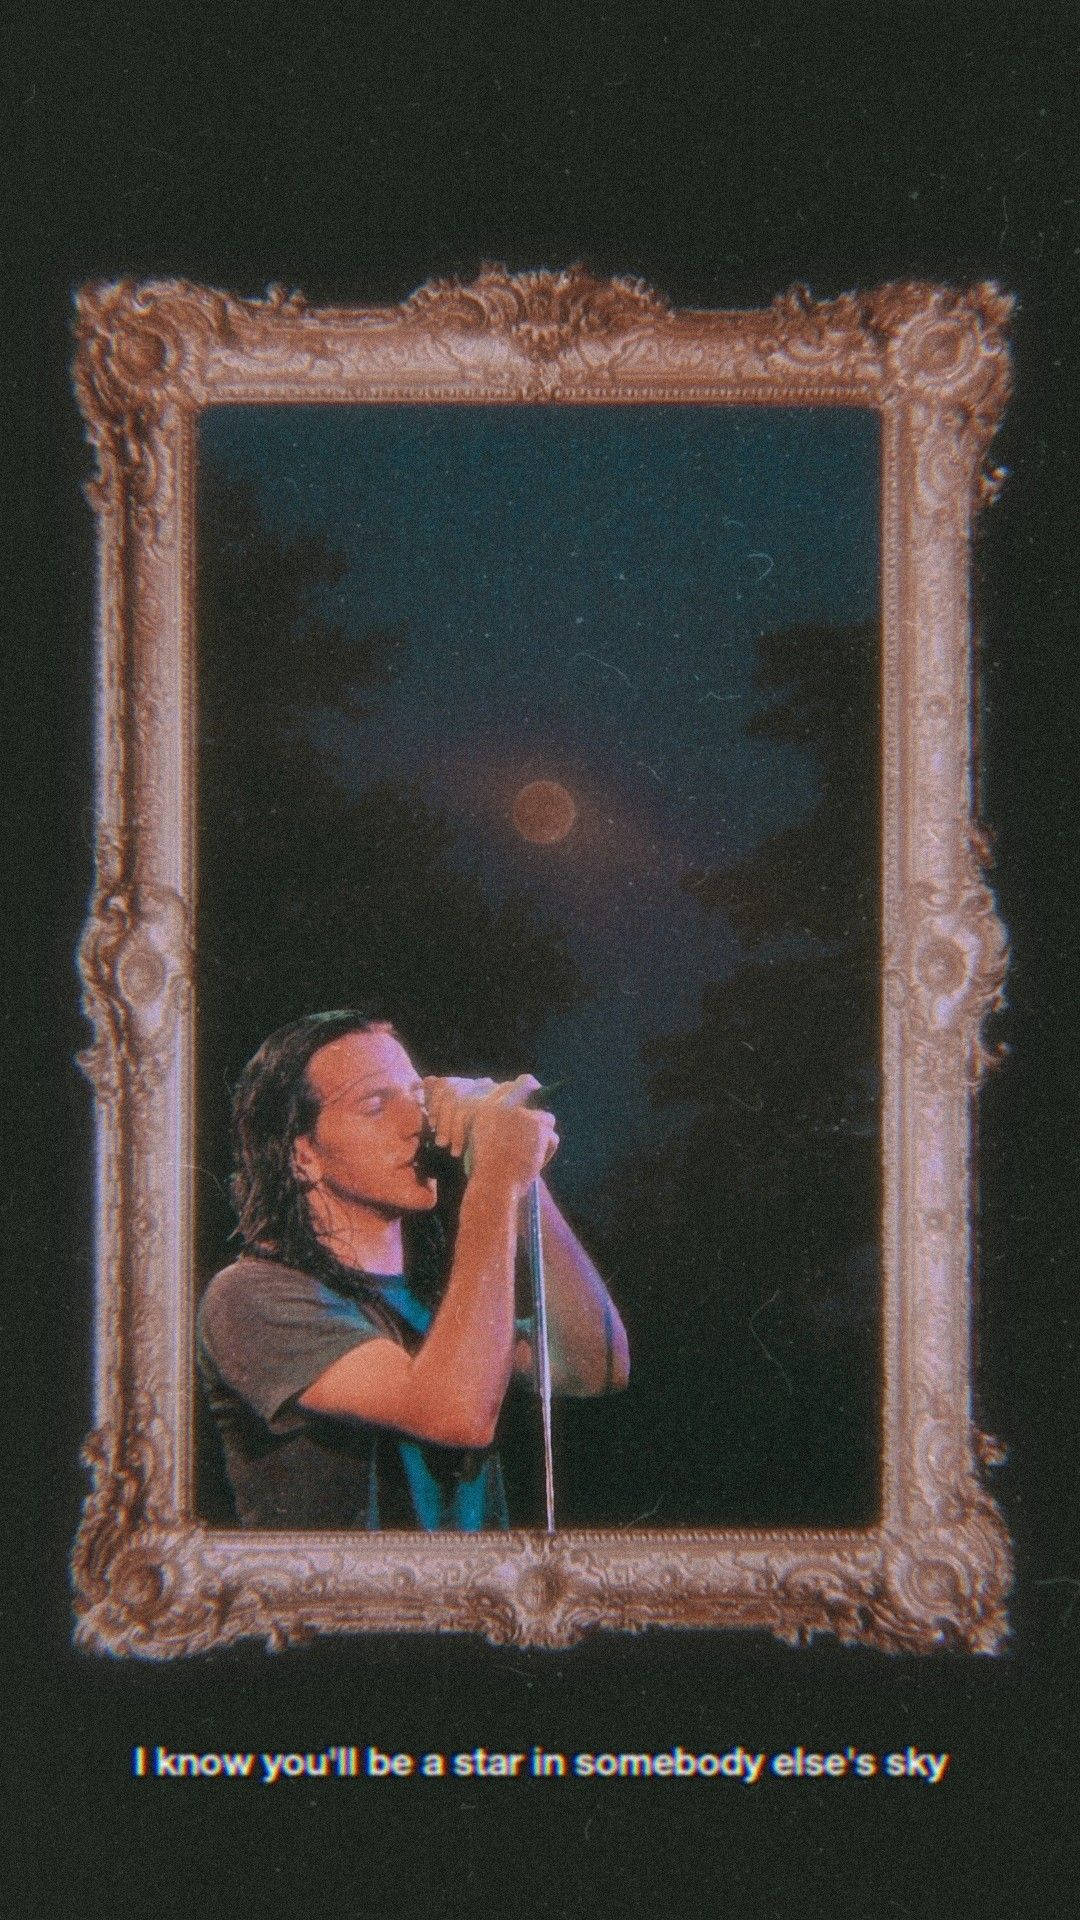 Pearl Jam Rock Band Tekster Tapet: Et farverigt og grafisk tapet, der inkluderer tekster fra Pearl Jams berømte sange. Wallpaper